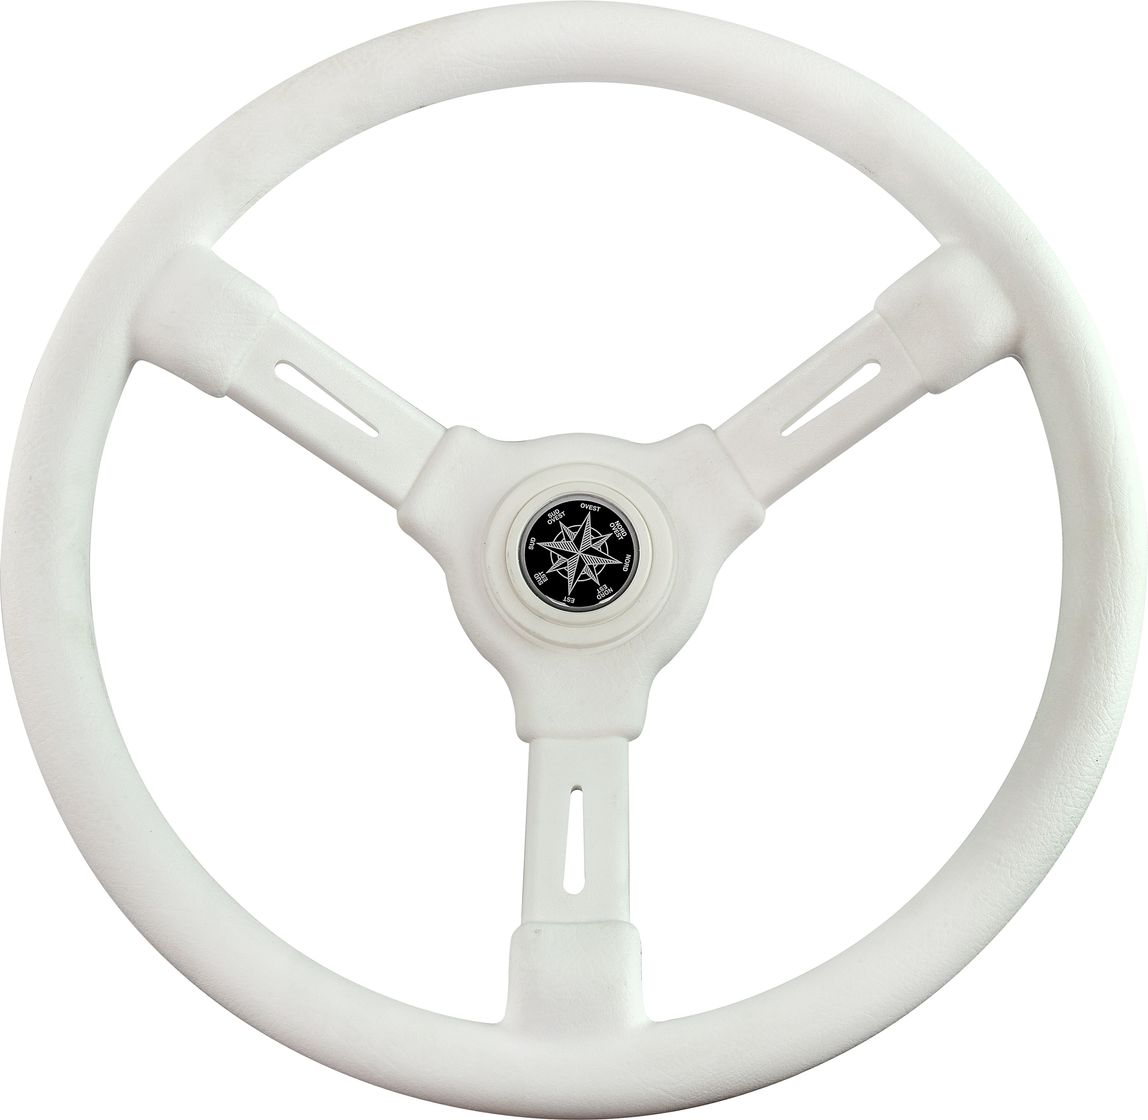 Рулевое колесо RIVIERA белый обод и спицы д. 350 мм VN8001-08 рулевое колесо leader plast белый обод серебряные спицы д 360 мм vn8360 08